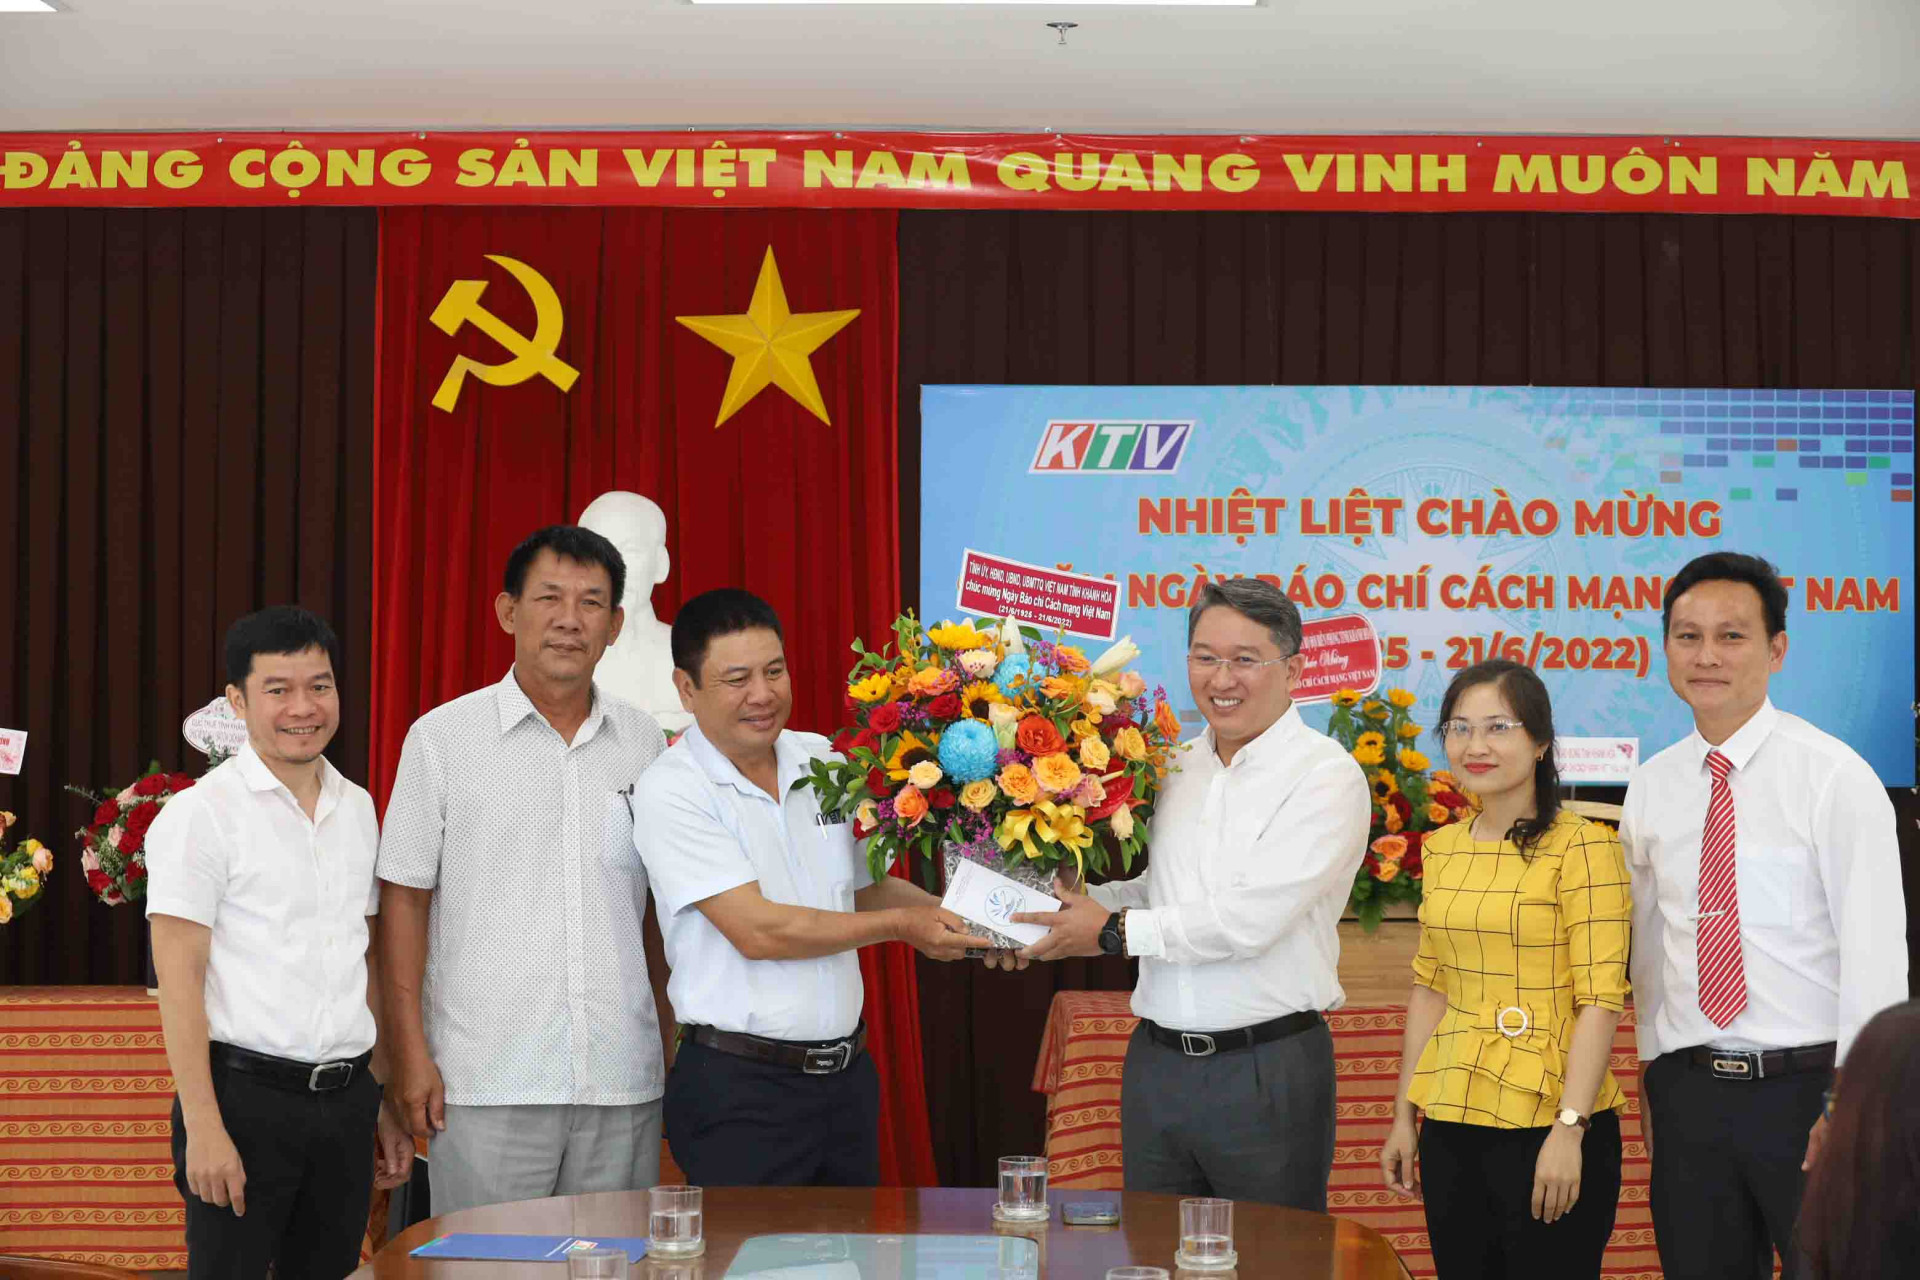 Ông Nguyễn Hải Ninh tặng hoa chúc mừng Đài Phát thanh và Truyền hình Khánh Hòa nhân dịp kỷ niệm Ngày Báo chí cách mạng Việt Nam.